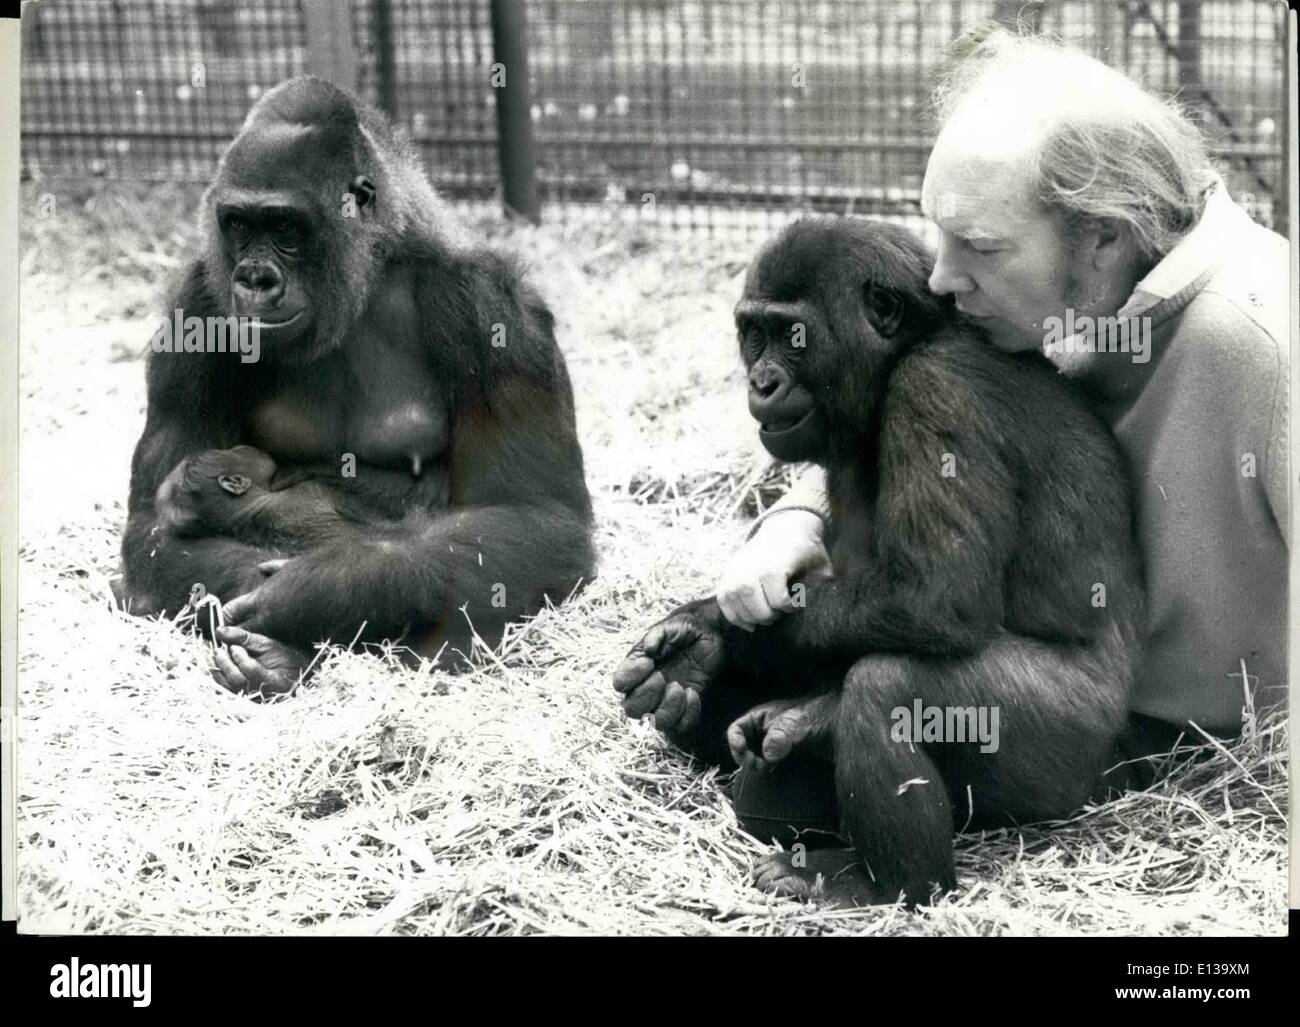 Febrero 29, 2012 - orgullosa mamá, Ju Ju espera a sus visitantes: Whitsum JU Ju el gorila está lleno de alegría, no sólo tiene un hermoso bebé de 7 semanas de edad, de sexo masculino, pero gorila desde Pentecostés suma sobre todo el verano, ella será capaz de mostrar el bebé Kijo al público. El bebé, nacido en cautividad se alimenta por breats HJu Ju, algo casi único en el estator cautivo y es de gran crédito a Zoo Proprietario John Aspinall Foto de stock